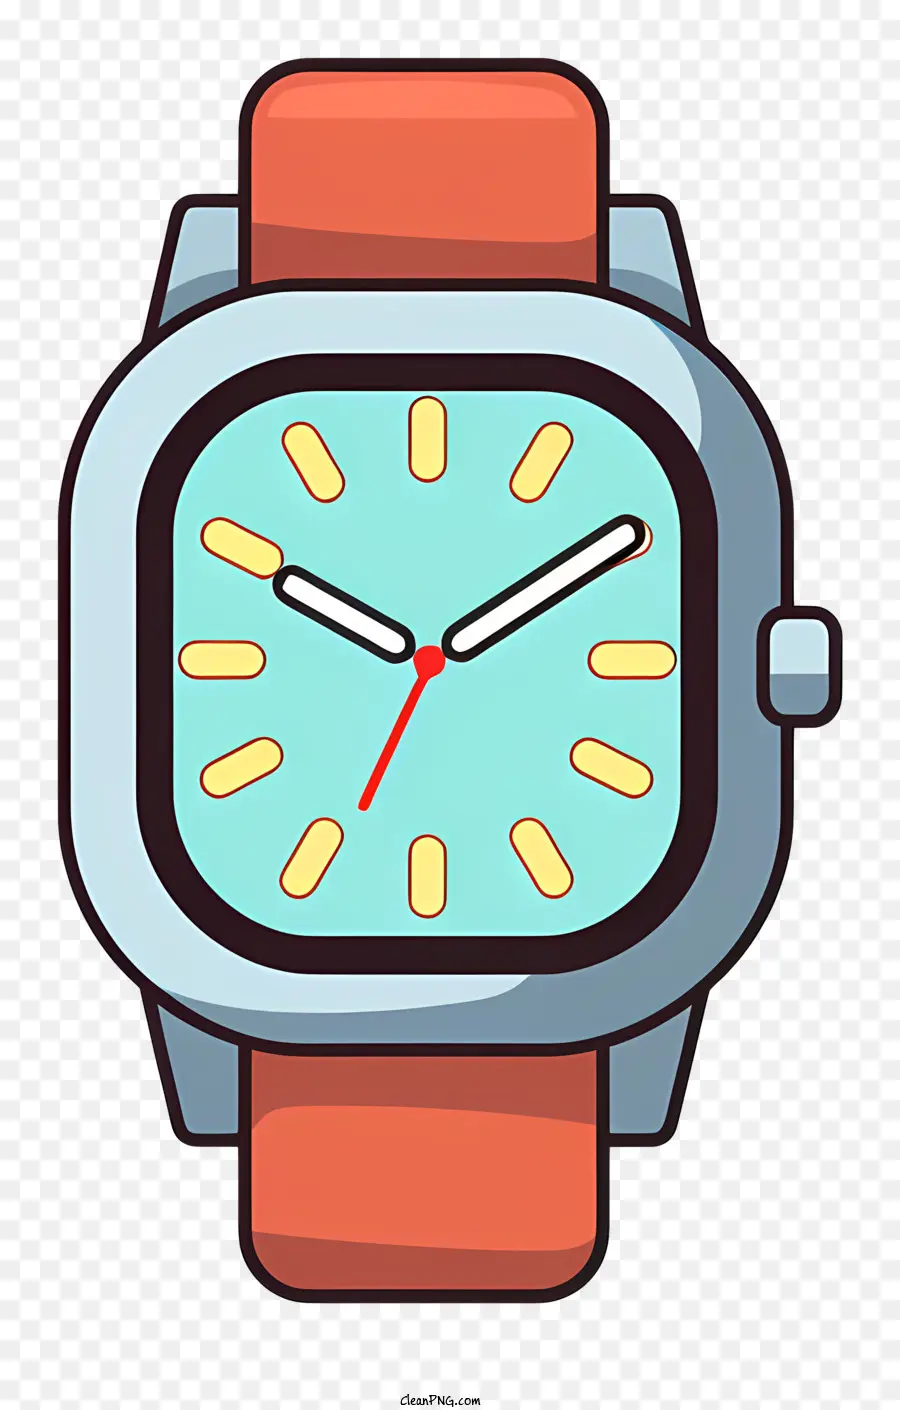 đồng hồ đeo tay bằng nhựa đồng hồ đen xem số trắng xem tay màu đỏ - Đồng hồ đeo tay bằng nhựa với bàn tay màu đỏ và màu xanh lá cây